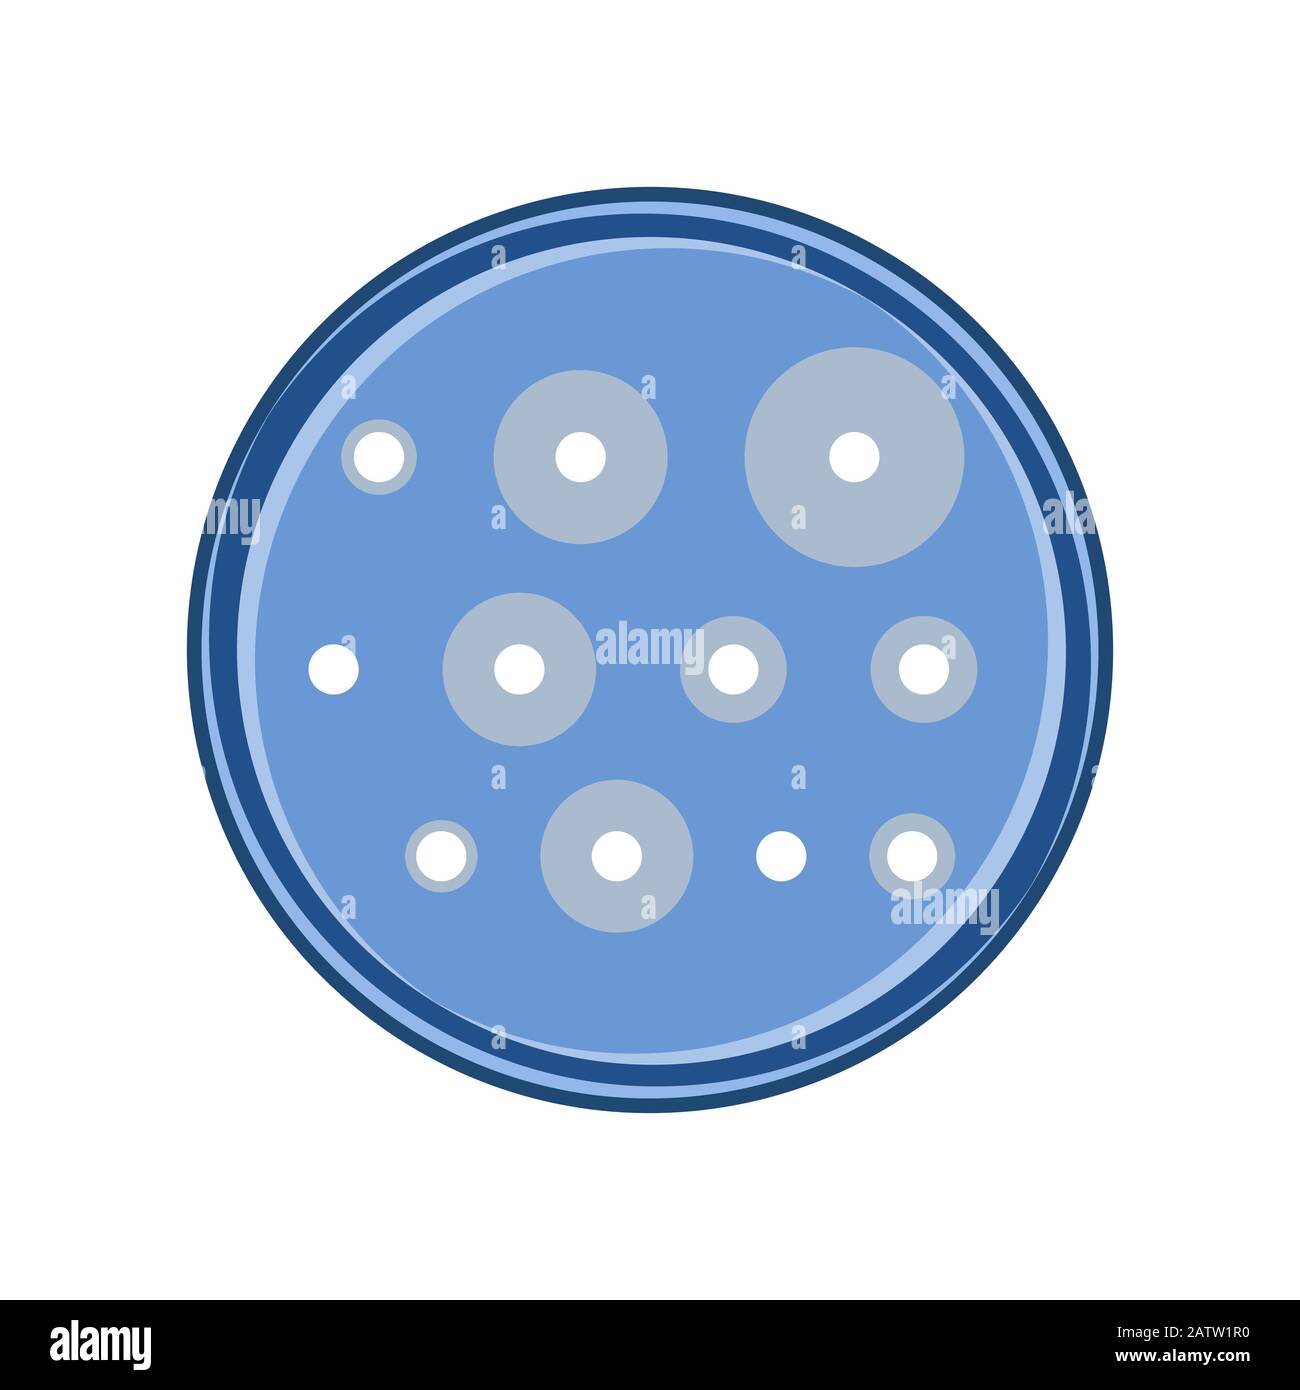 Analyse de sensibilité aux antibiotiques des bactéries dans la boîte de pétri, conception vectorielle plate. Illustration de Vecteur